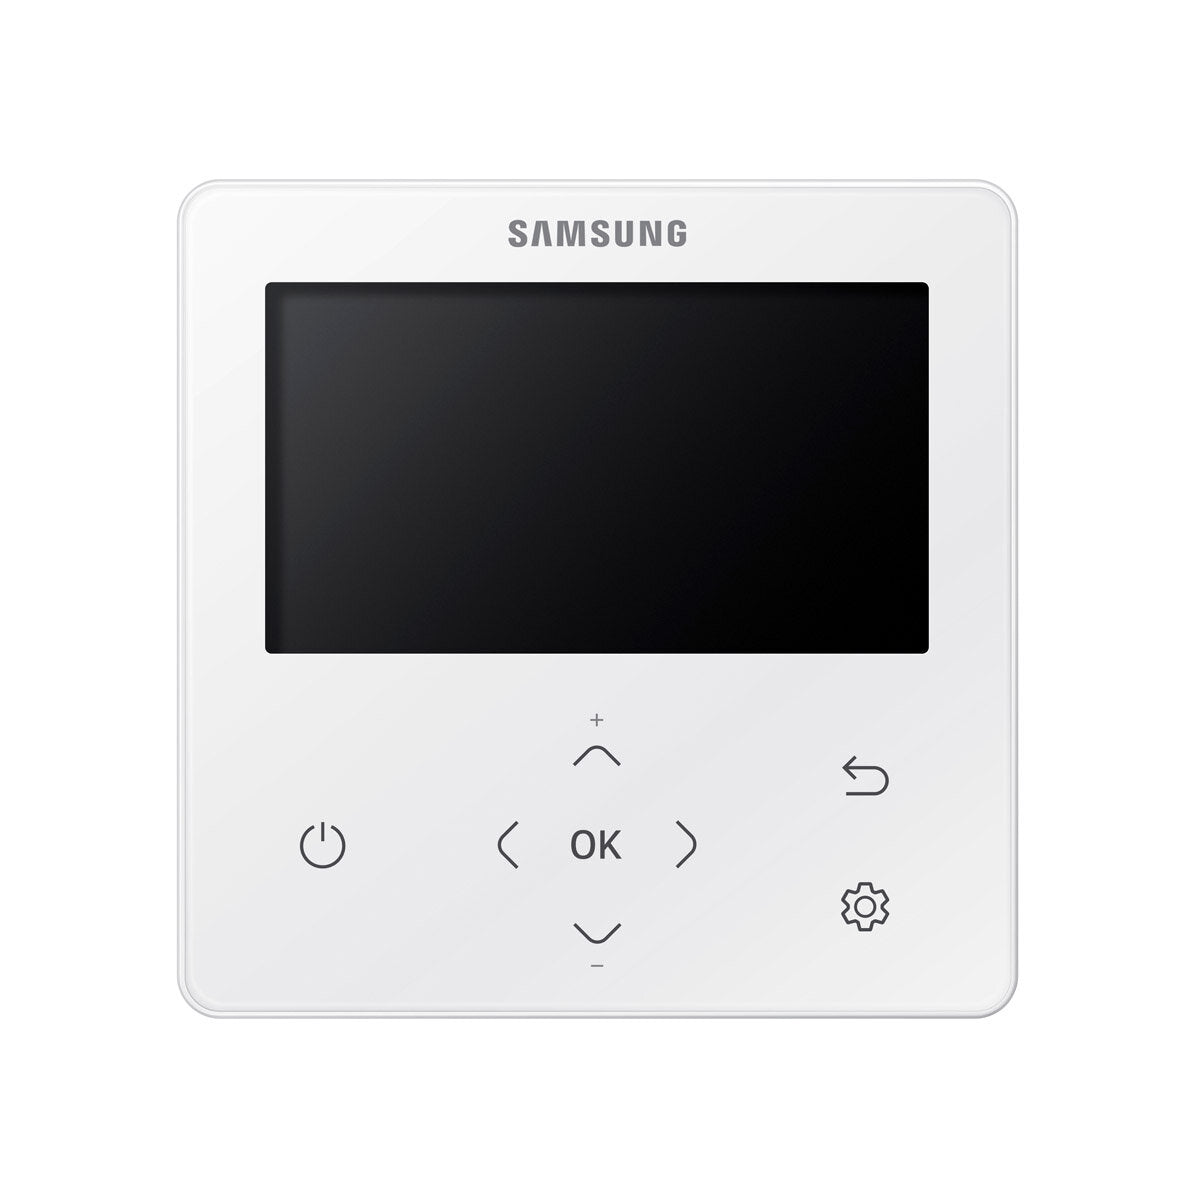 Samsung Climatiseur WindFree Cassette 1 voie penta split 9000 + 9000 + 9000 + 12000 + 12000 BTU inverter A++ unité extérieure 10,0 kW